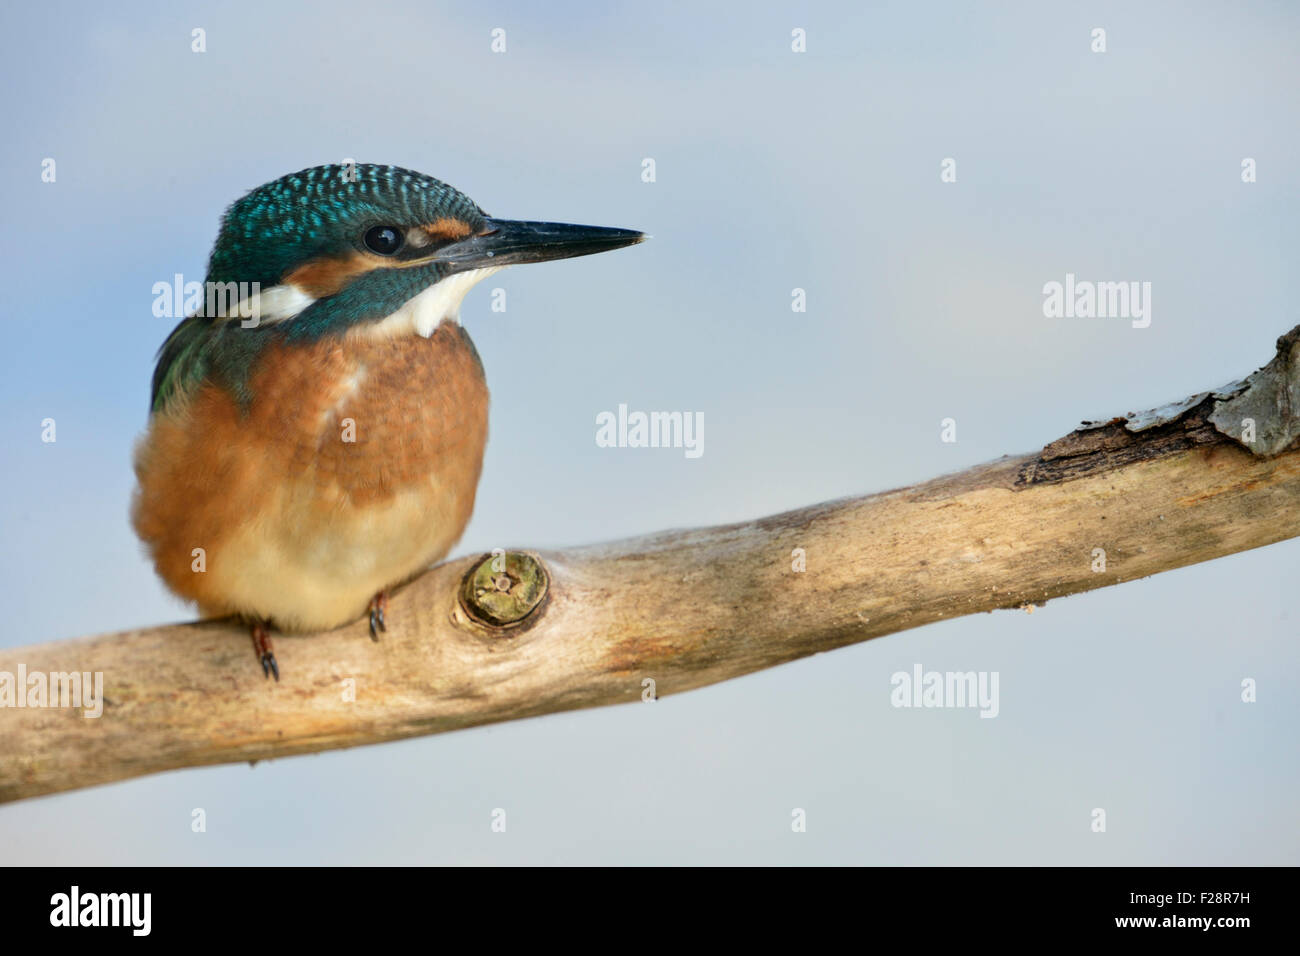 Les jeunes / Kingfisher Kingfisher commun eurasien Alcedo atthis Optimize ( / ) est assis sur une branche en face d'un fond bleu. Banque D'Images